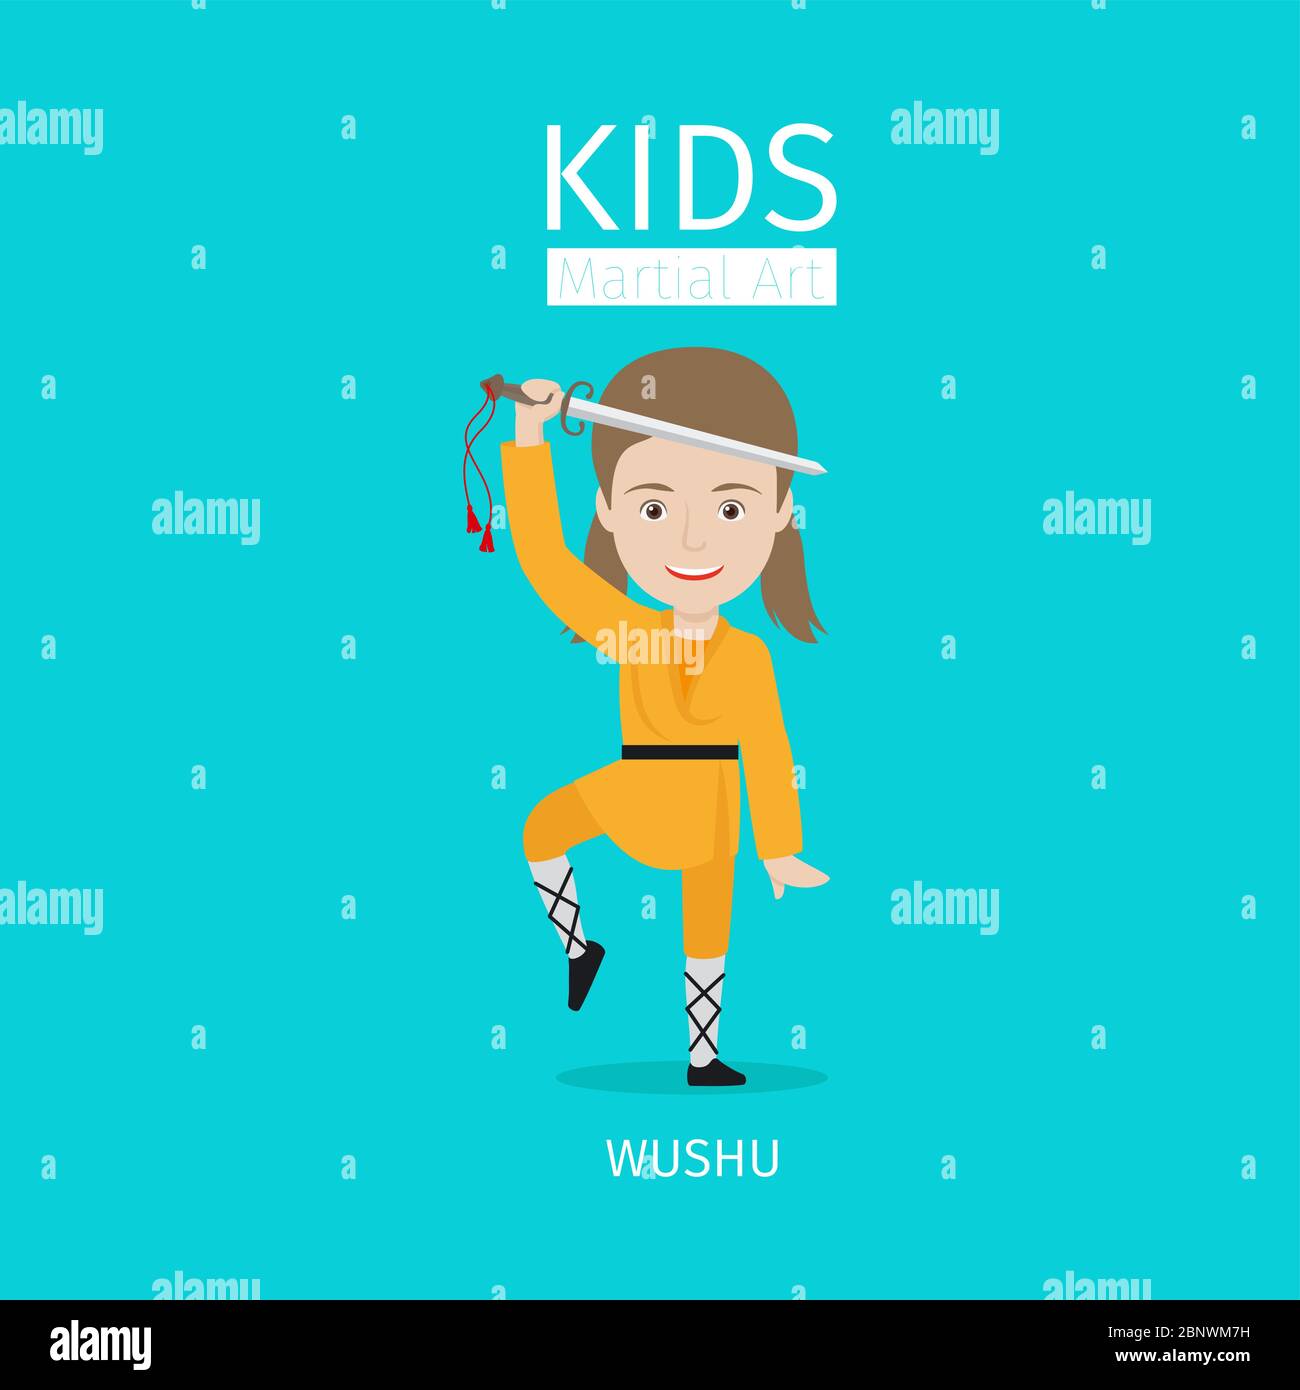 Kids martial art vector illustration. Wushu girl on blue background Stock Vector